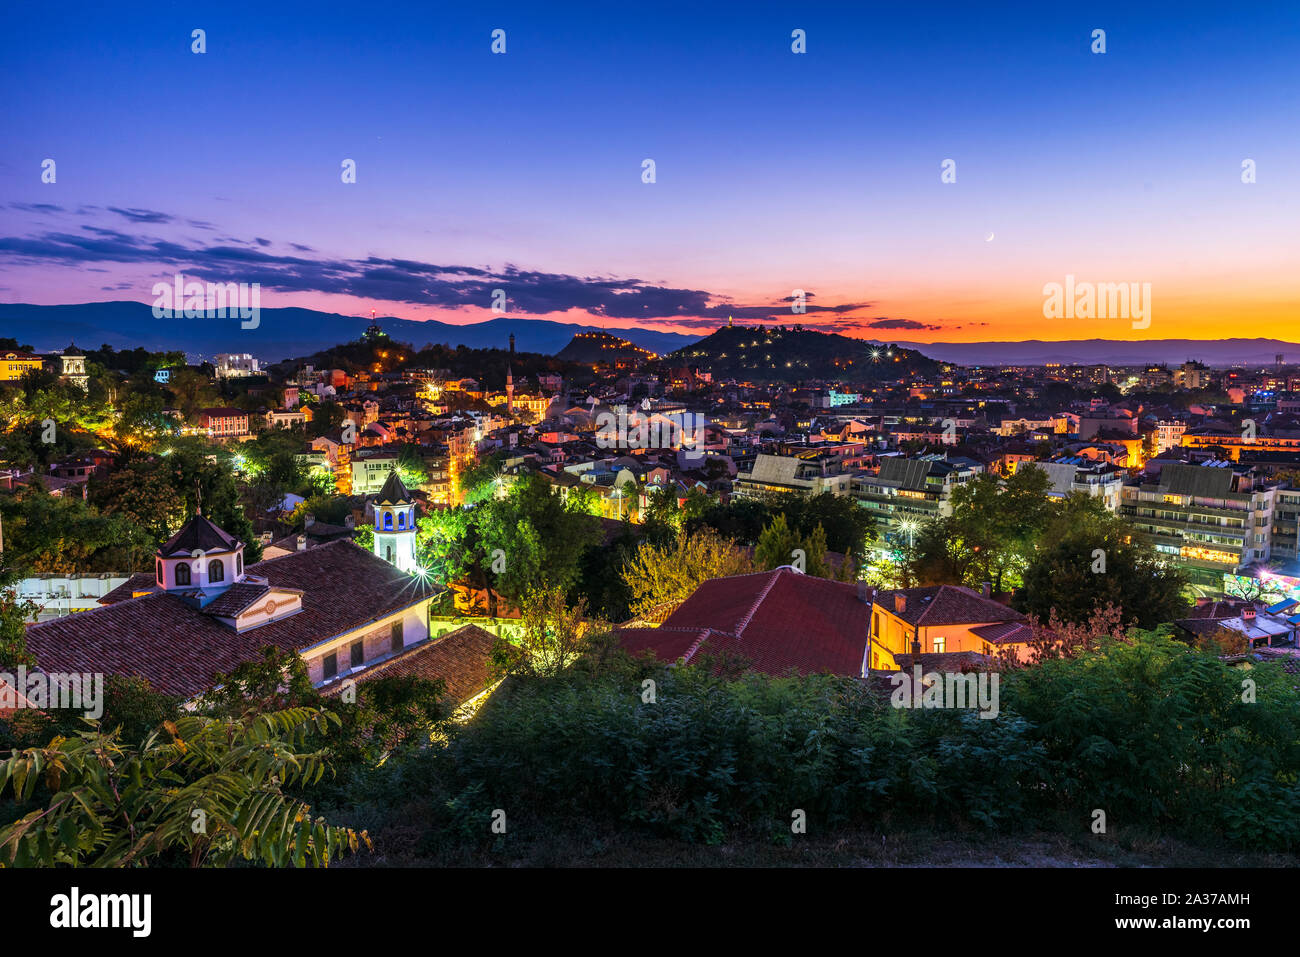 La città di Plovdiv, Bulgaria. Foto panoramica sulla città dopo il tramonto. Foto Stock